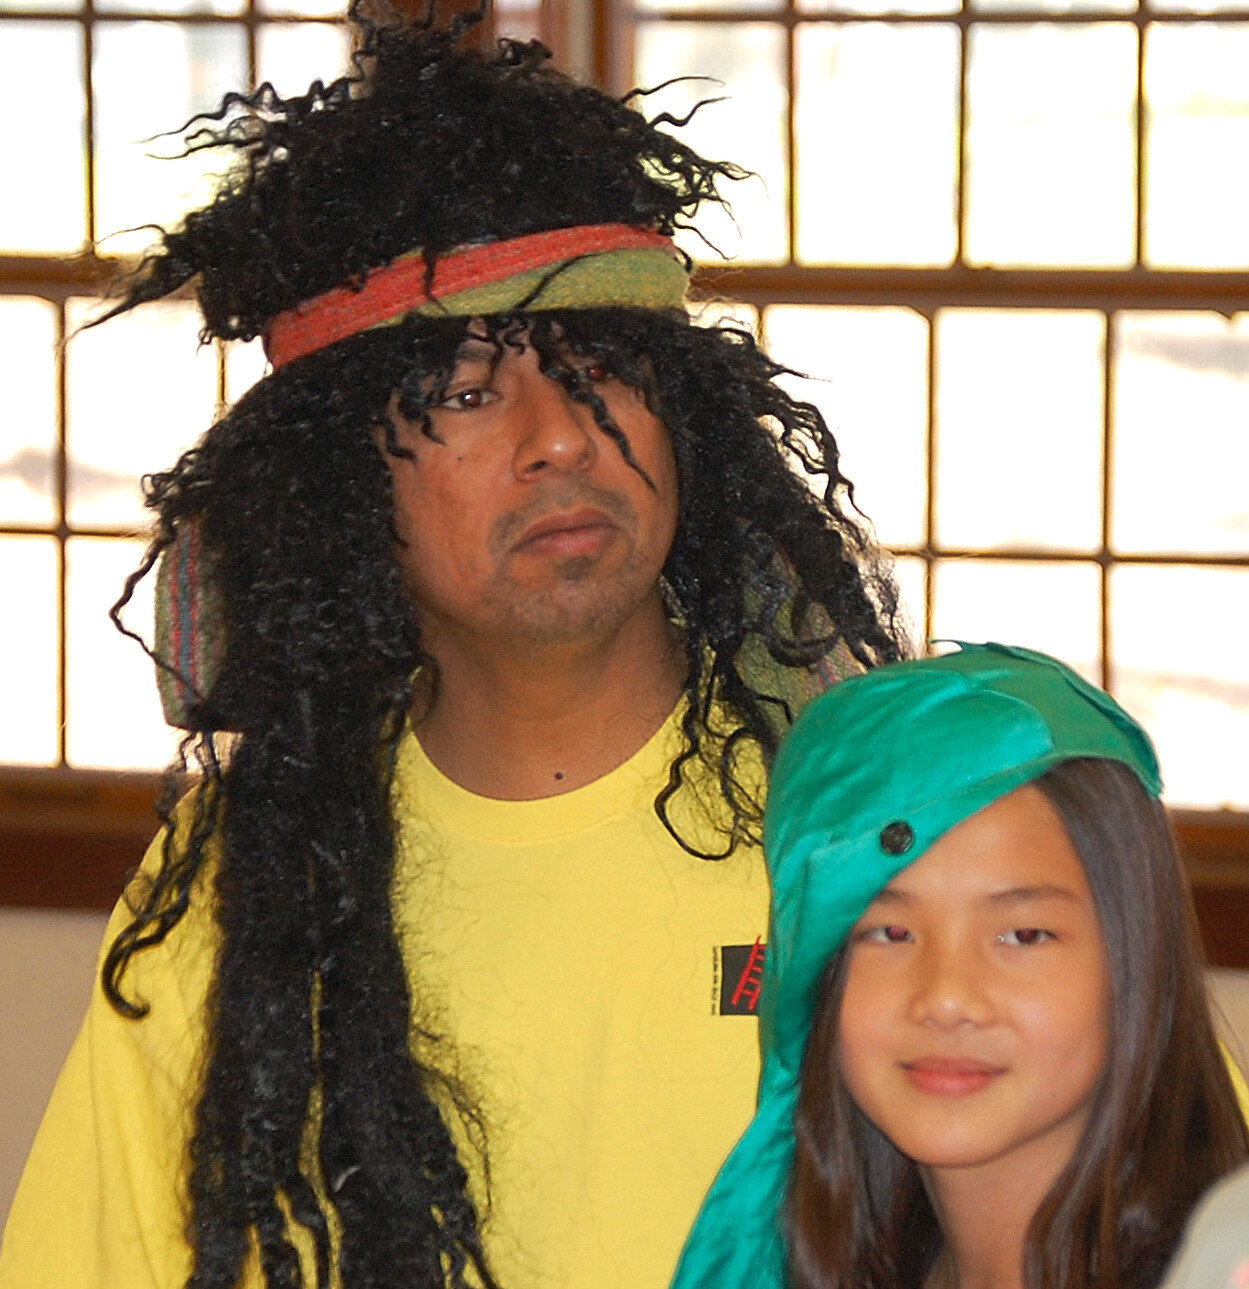 Actor in wig and girl in cap (2).jpg